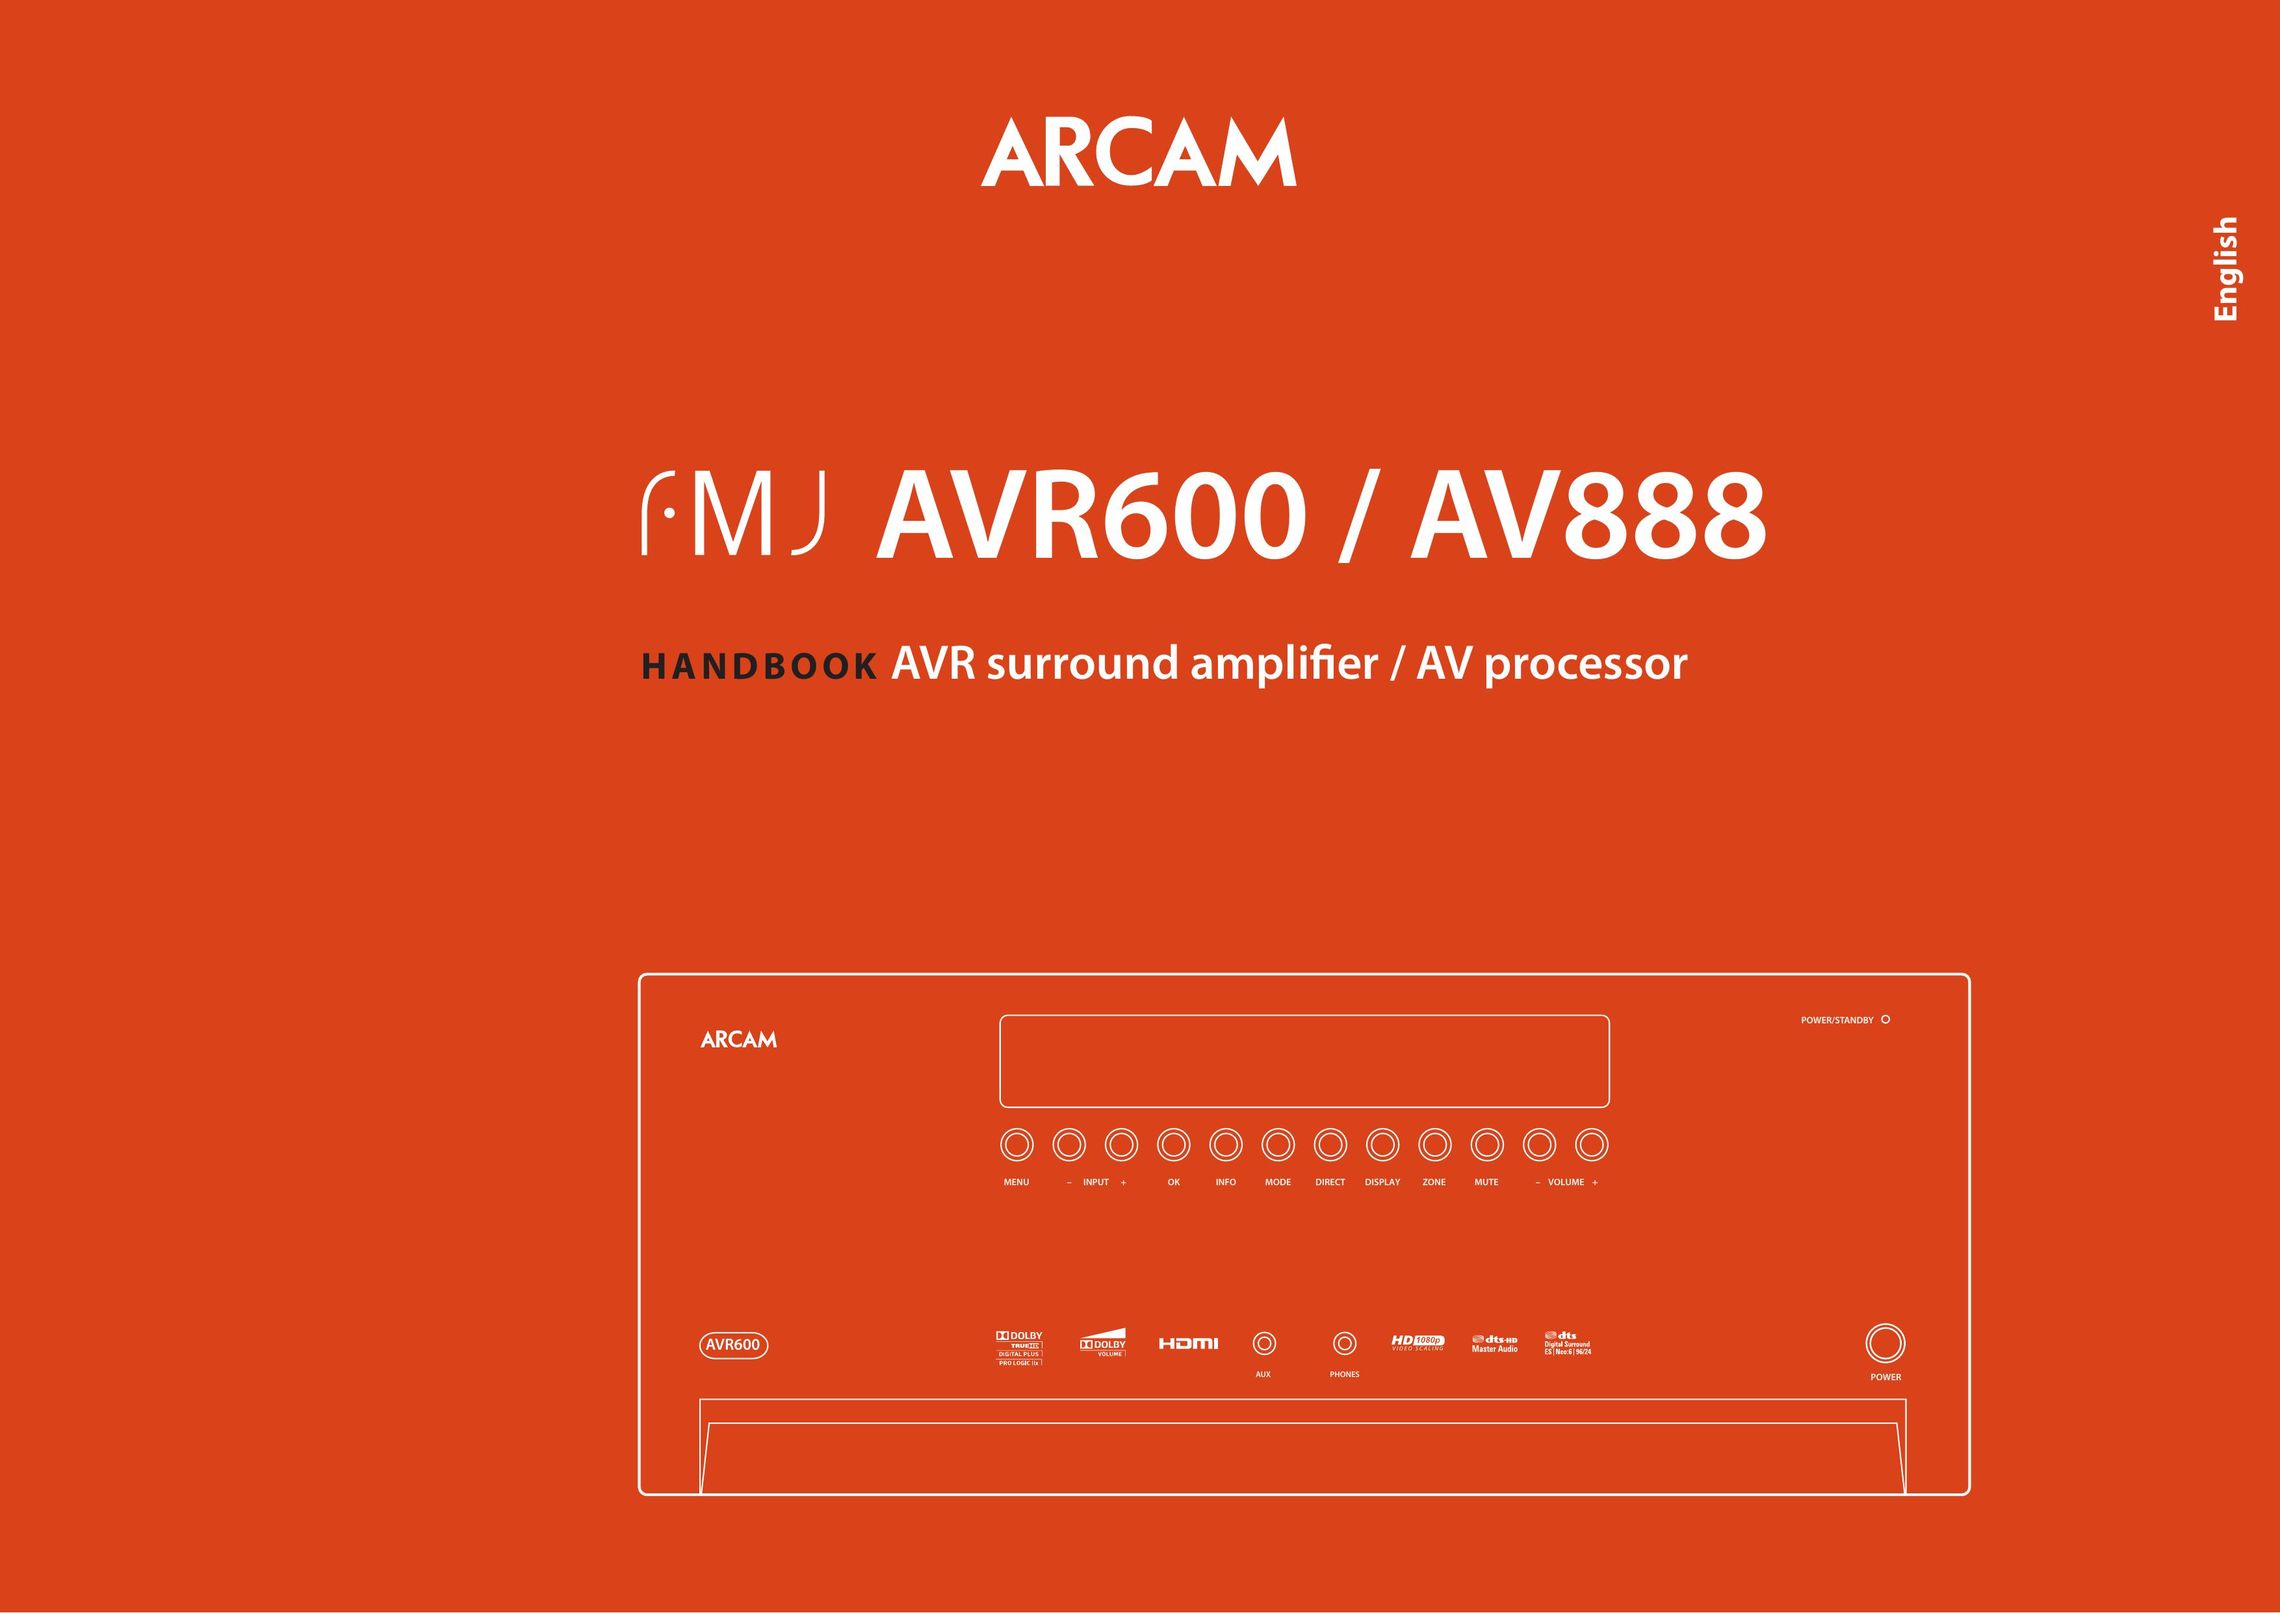 Arcam AV888 Stereo Receiver User Manual